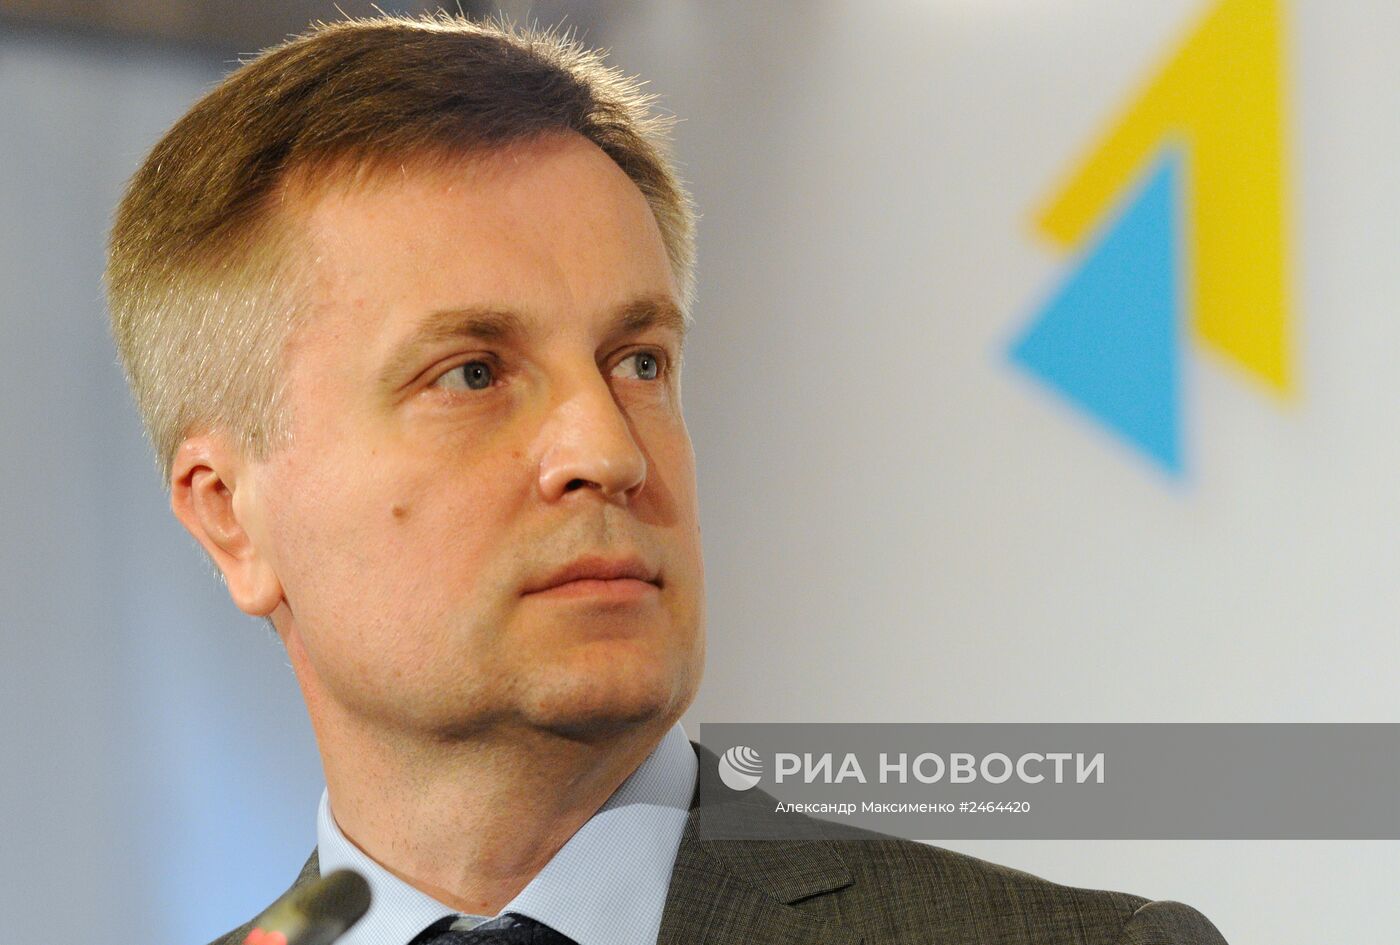 Брифинг председателя Службы Безопасности Украины В.Наливайченко